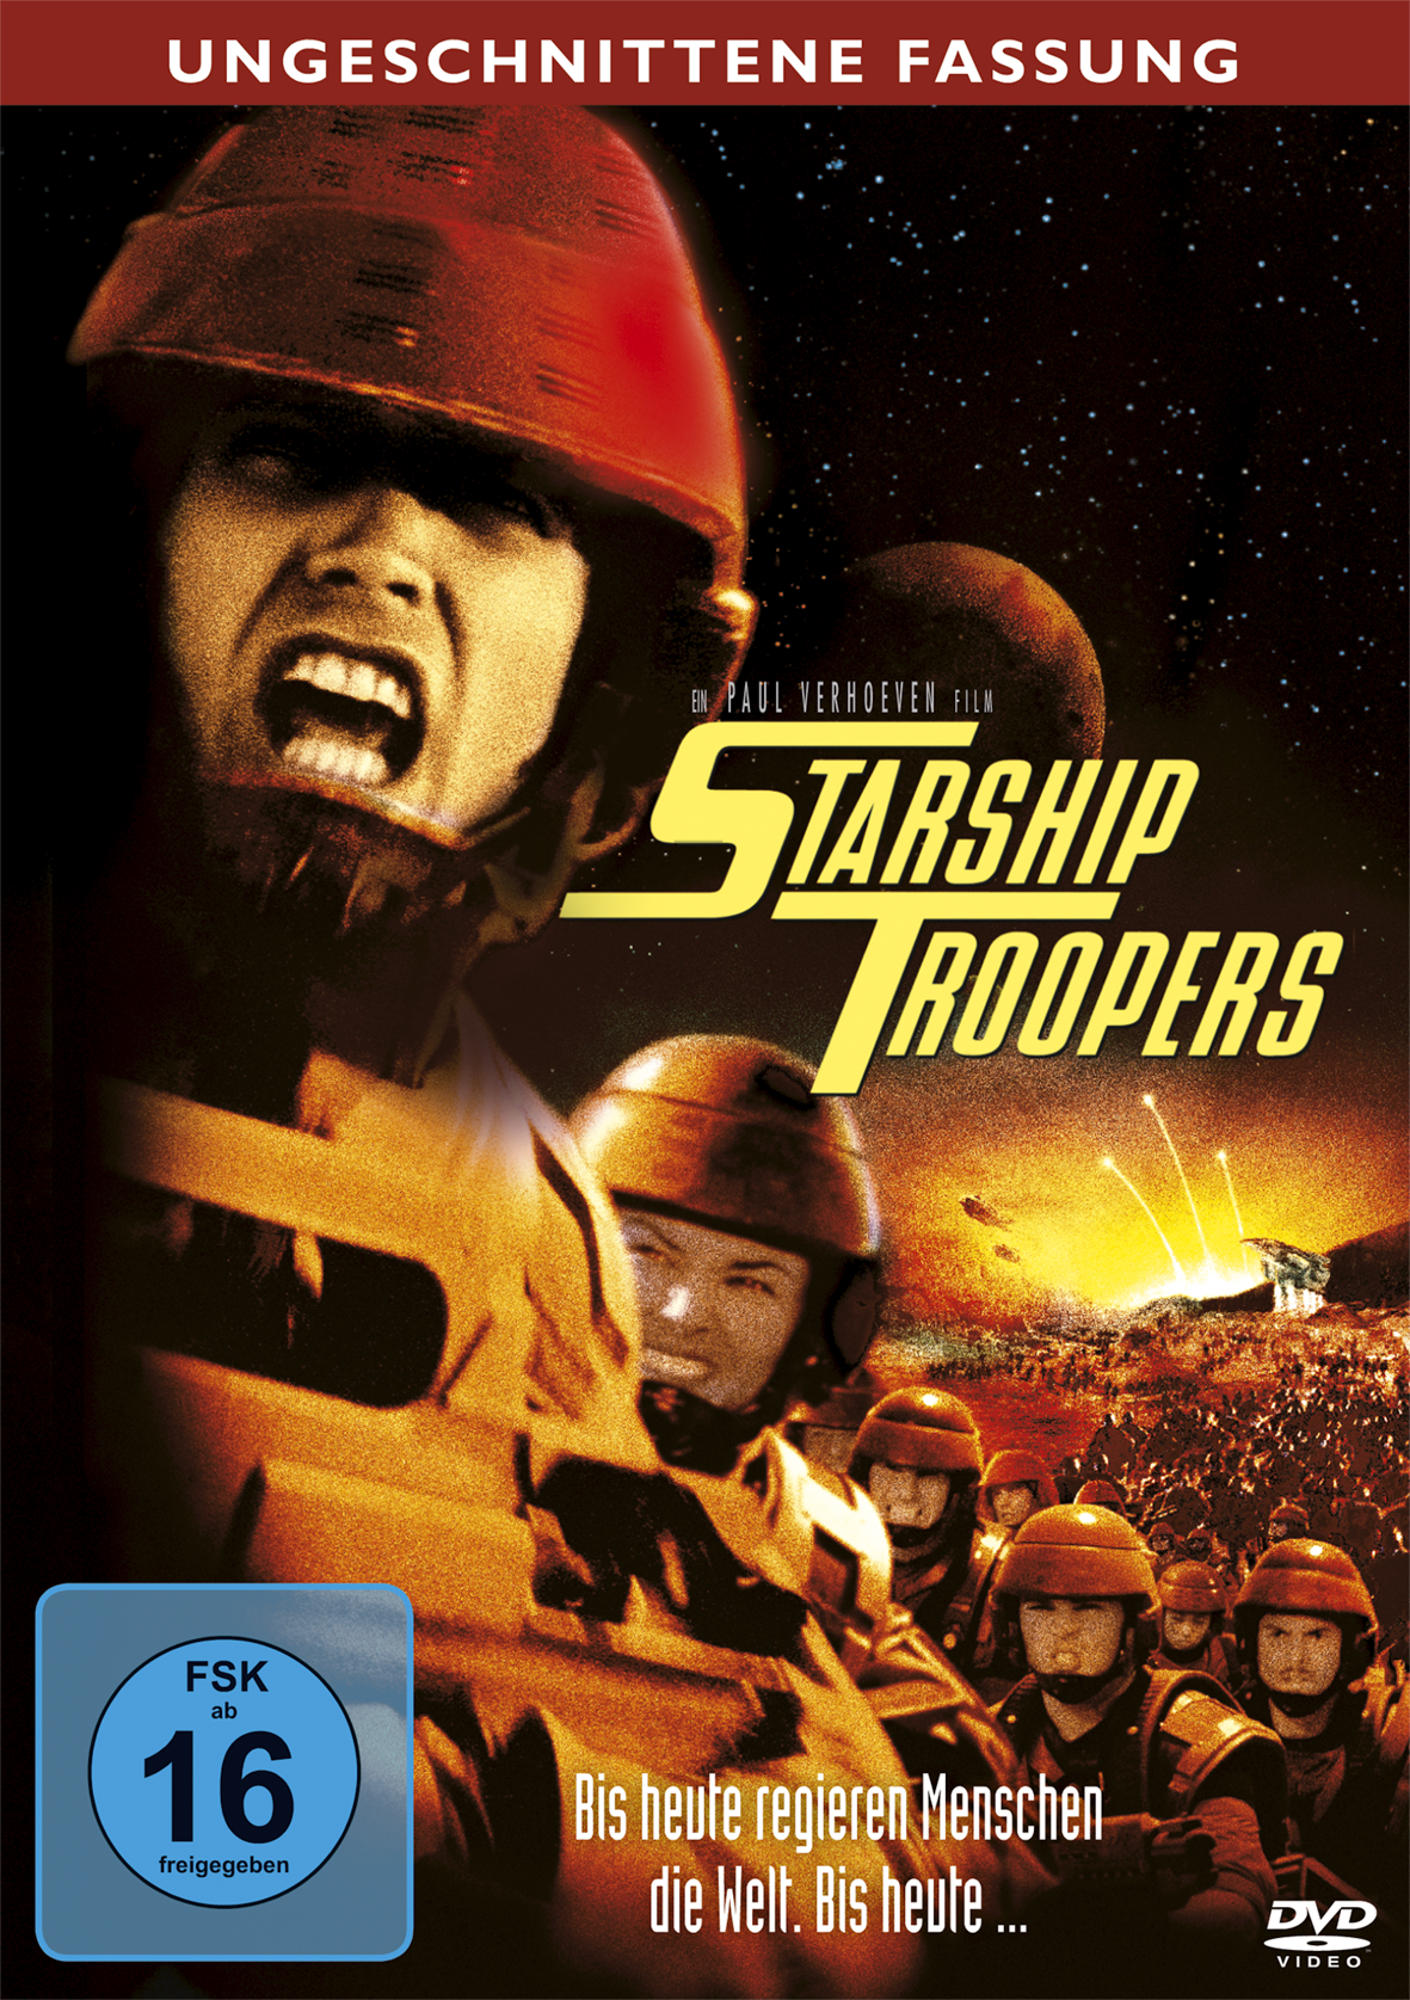 Ungeschnittene DVD Troopers Starship - Fassung